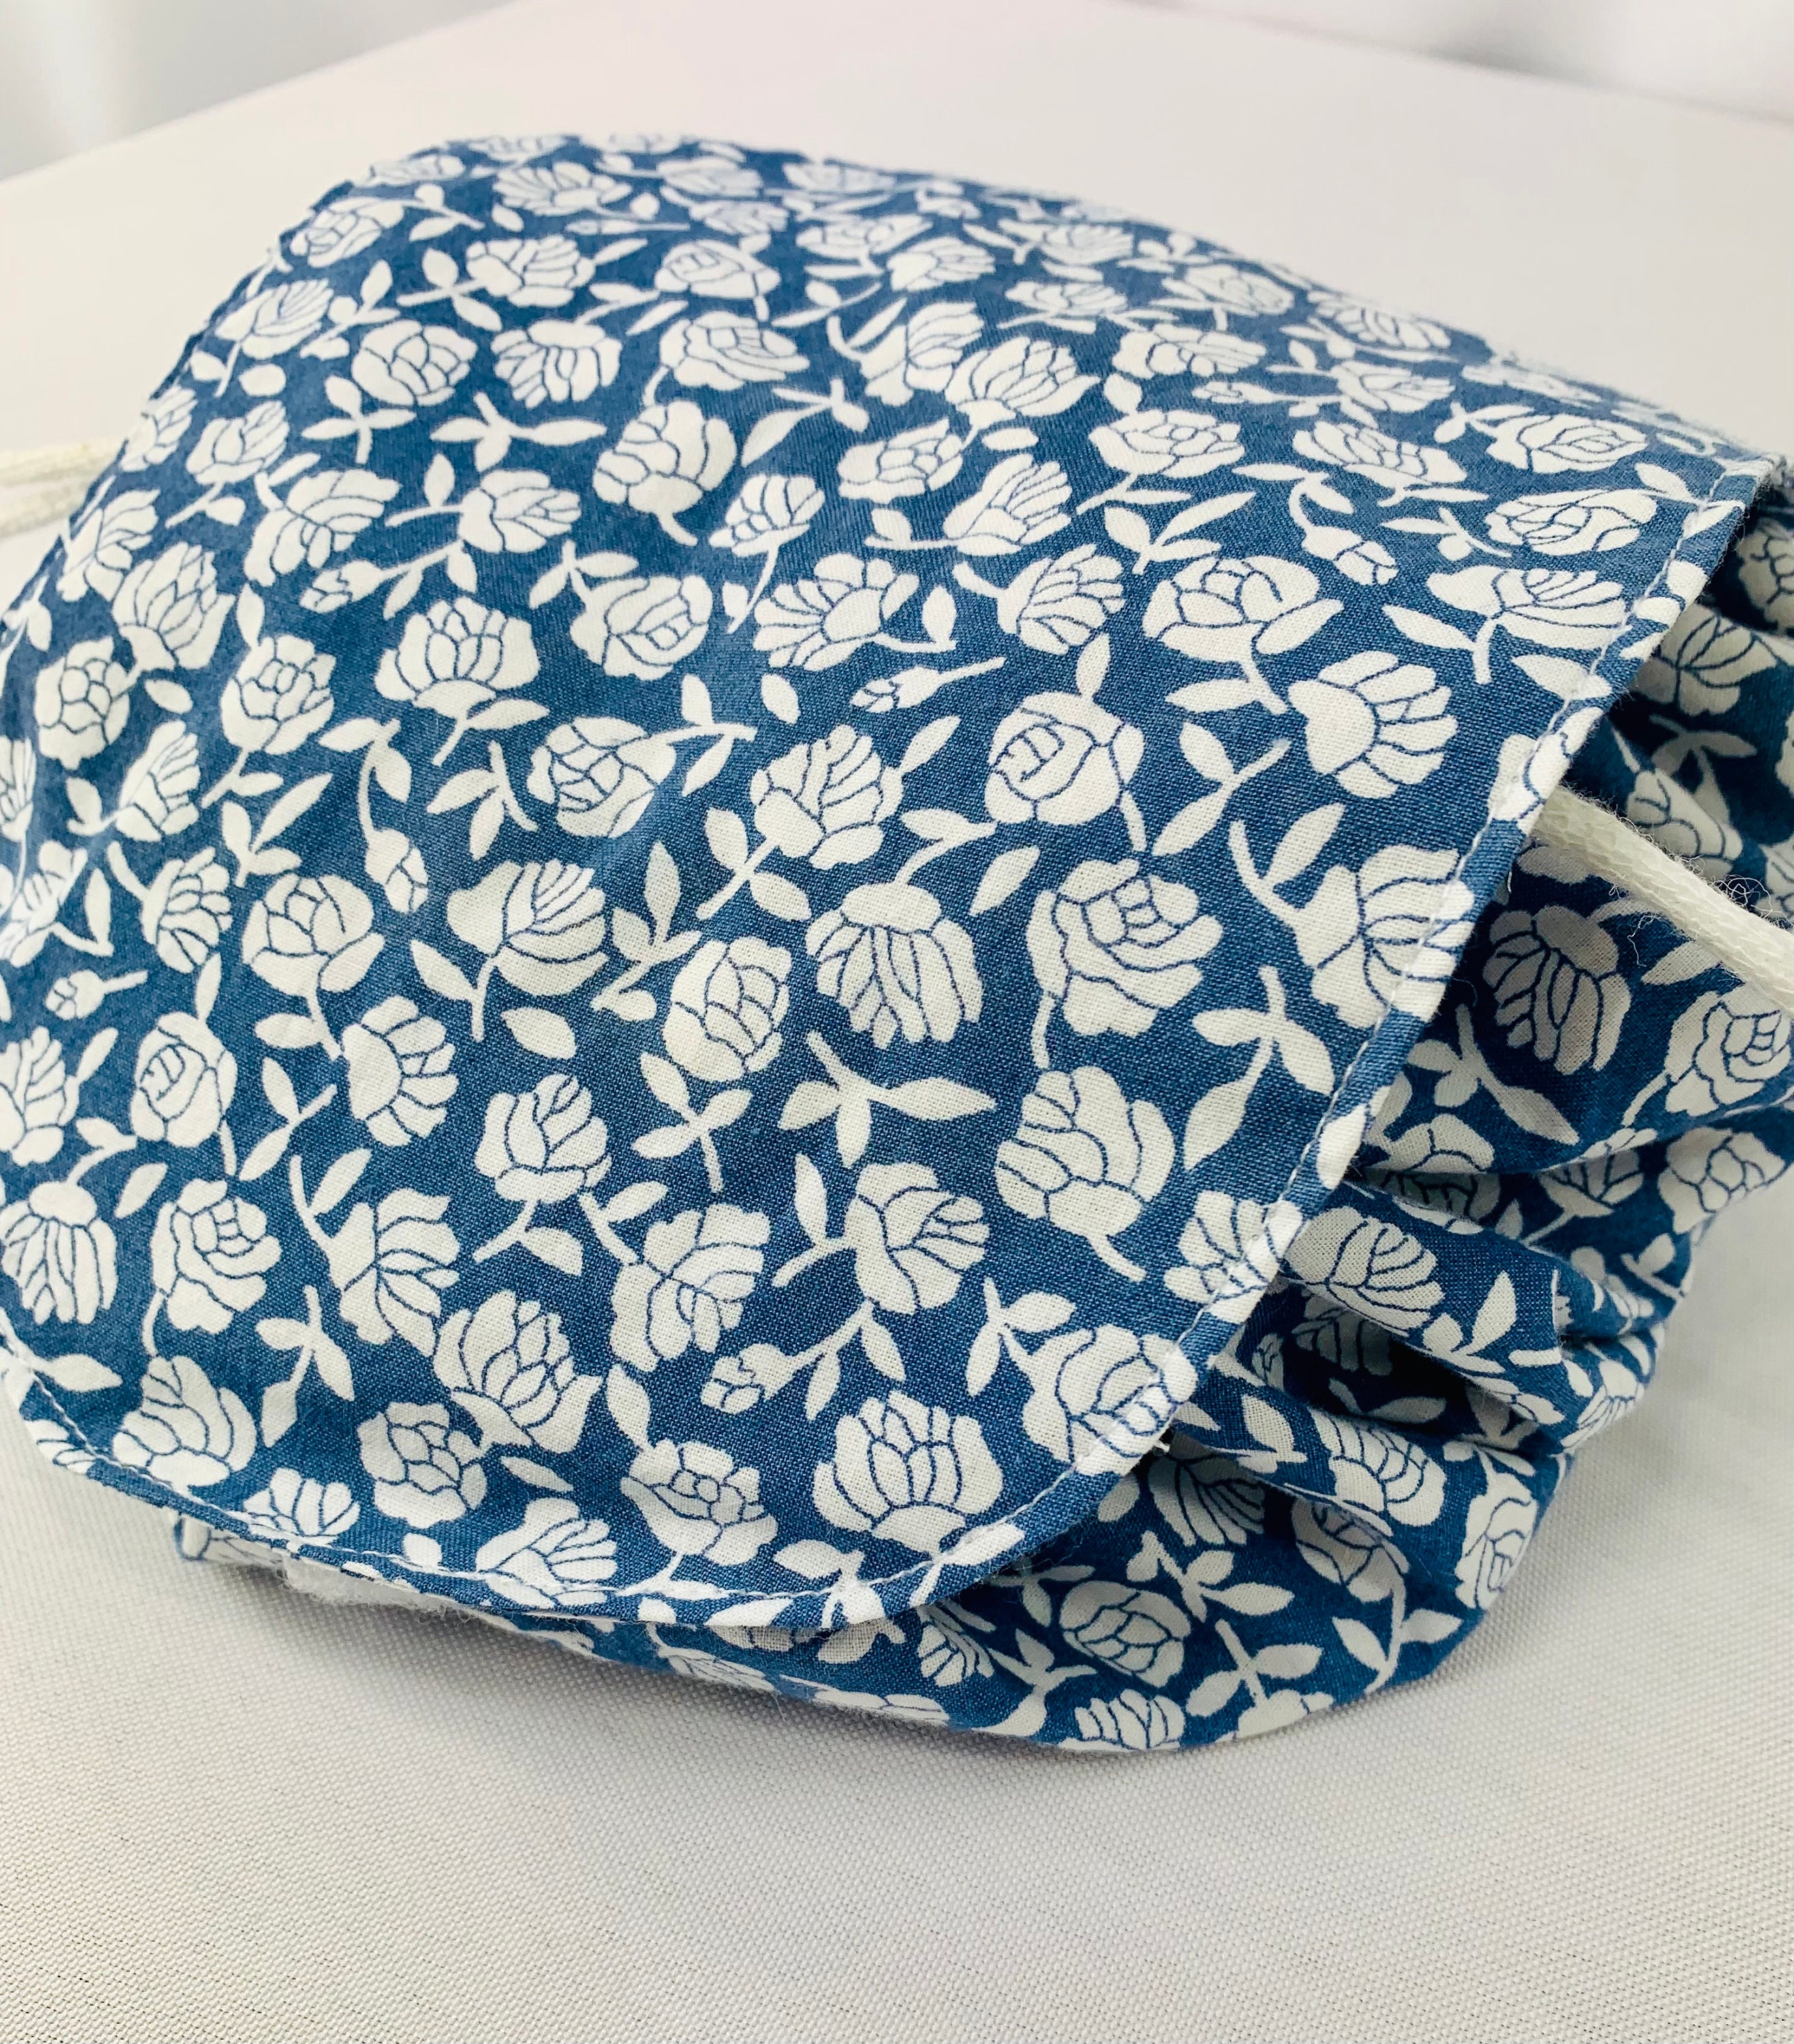 Blue Floral Makeup Bag With a Drawstring Lay Flat Makeup Bag - Etsy UK